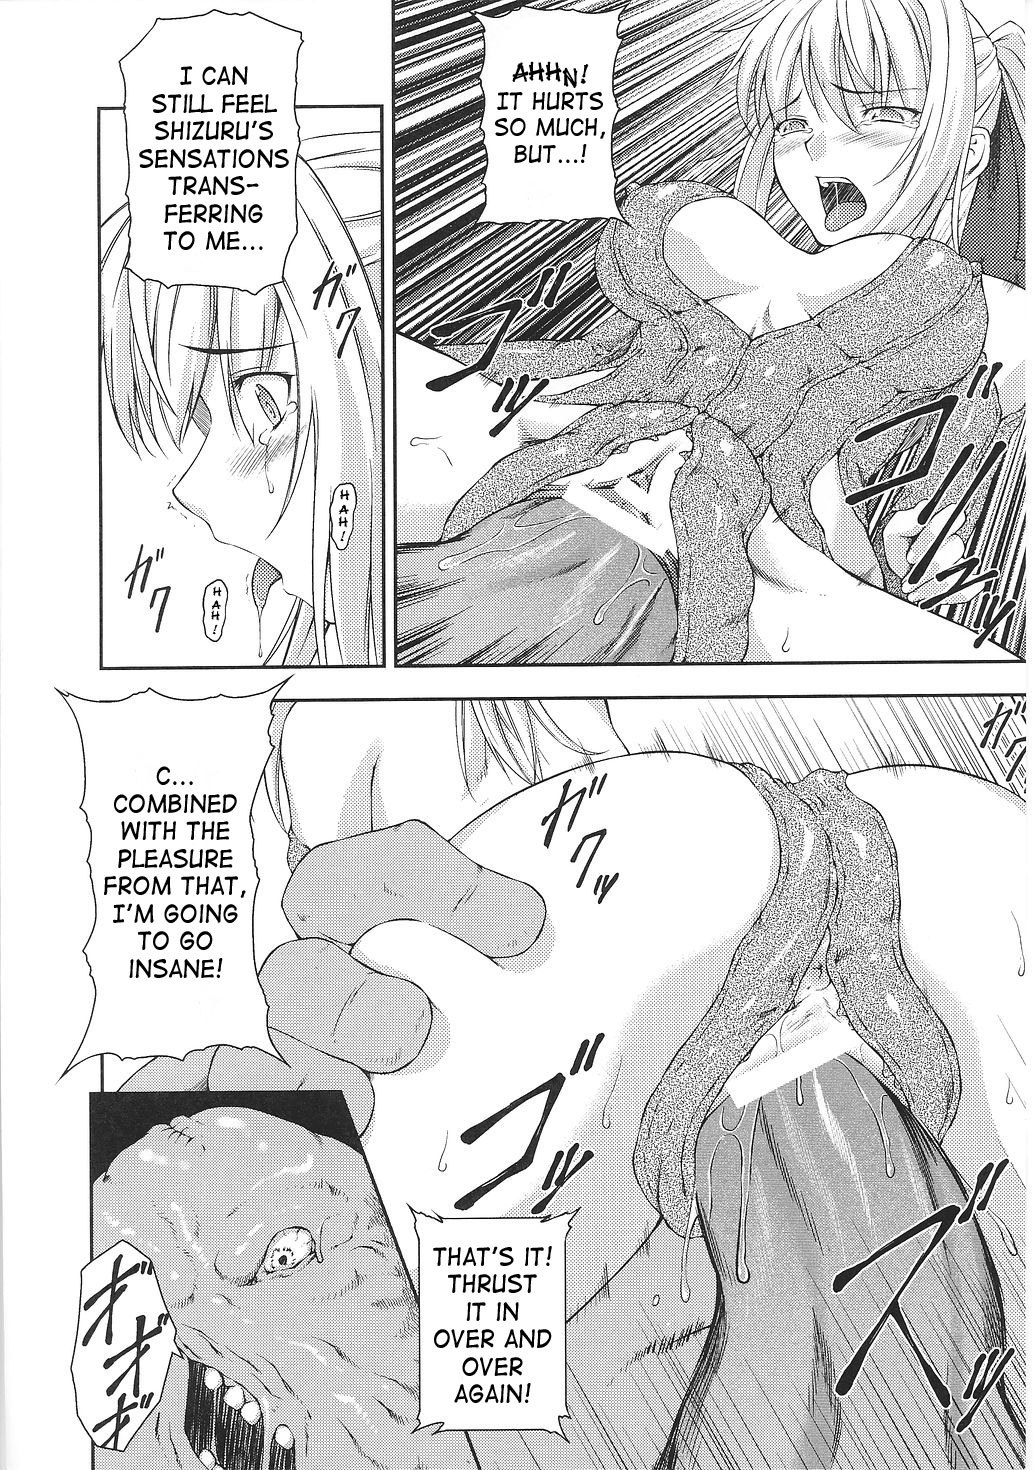 Asuka and Shizuru 88 hentai manga